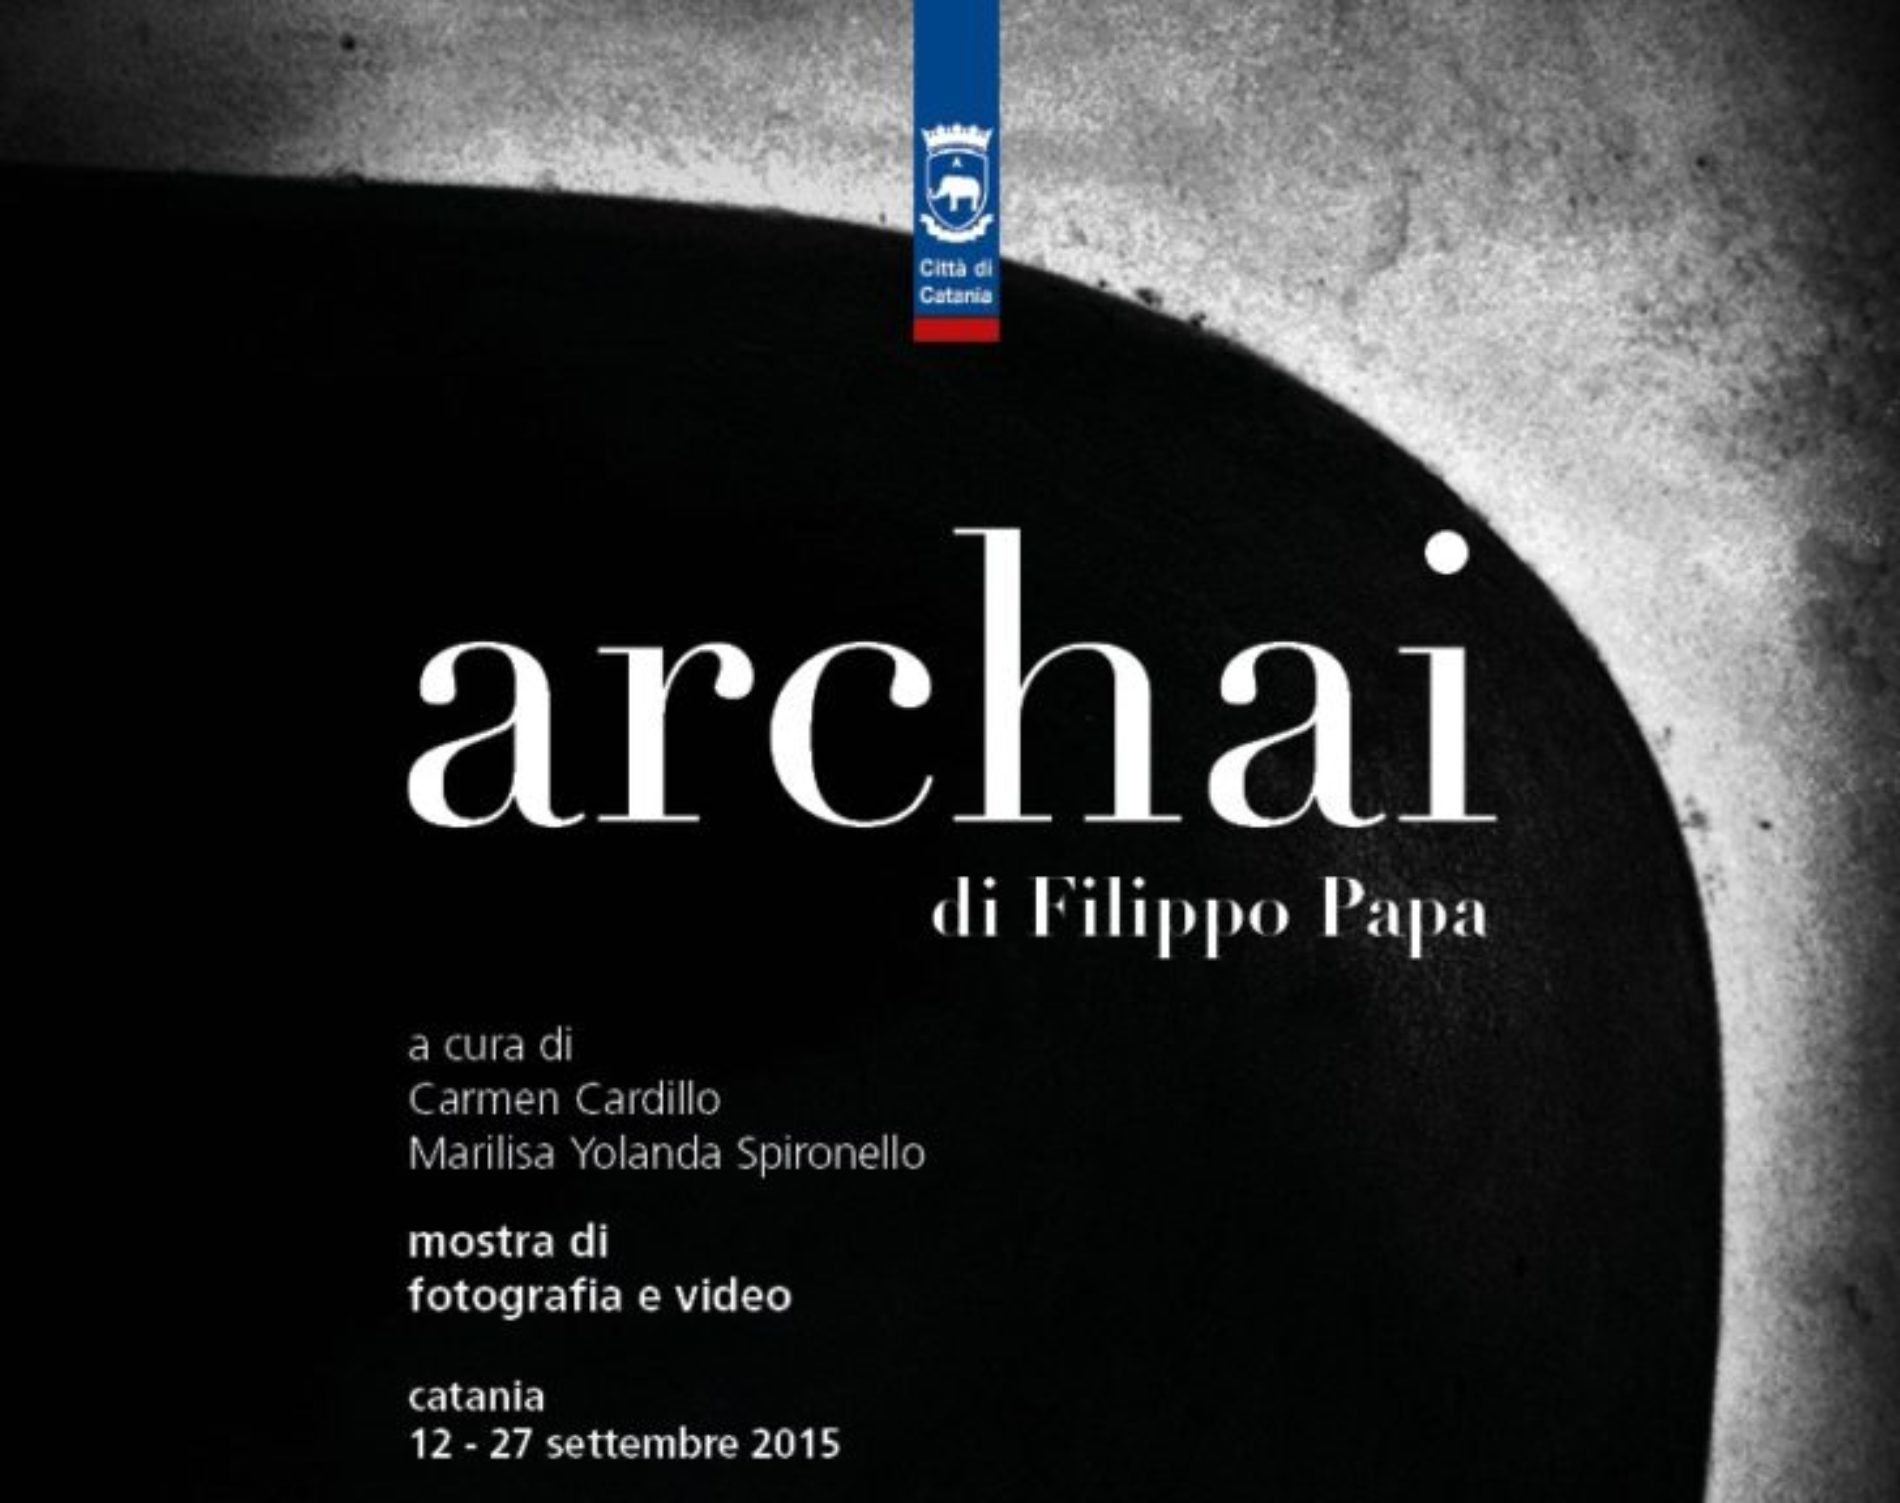 Mostra personale di fotografia e video “Archai” dell’agirino Filippo Papa a Catania